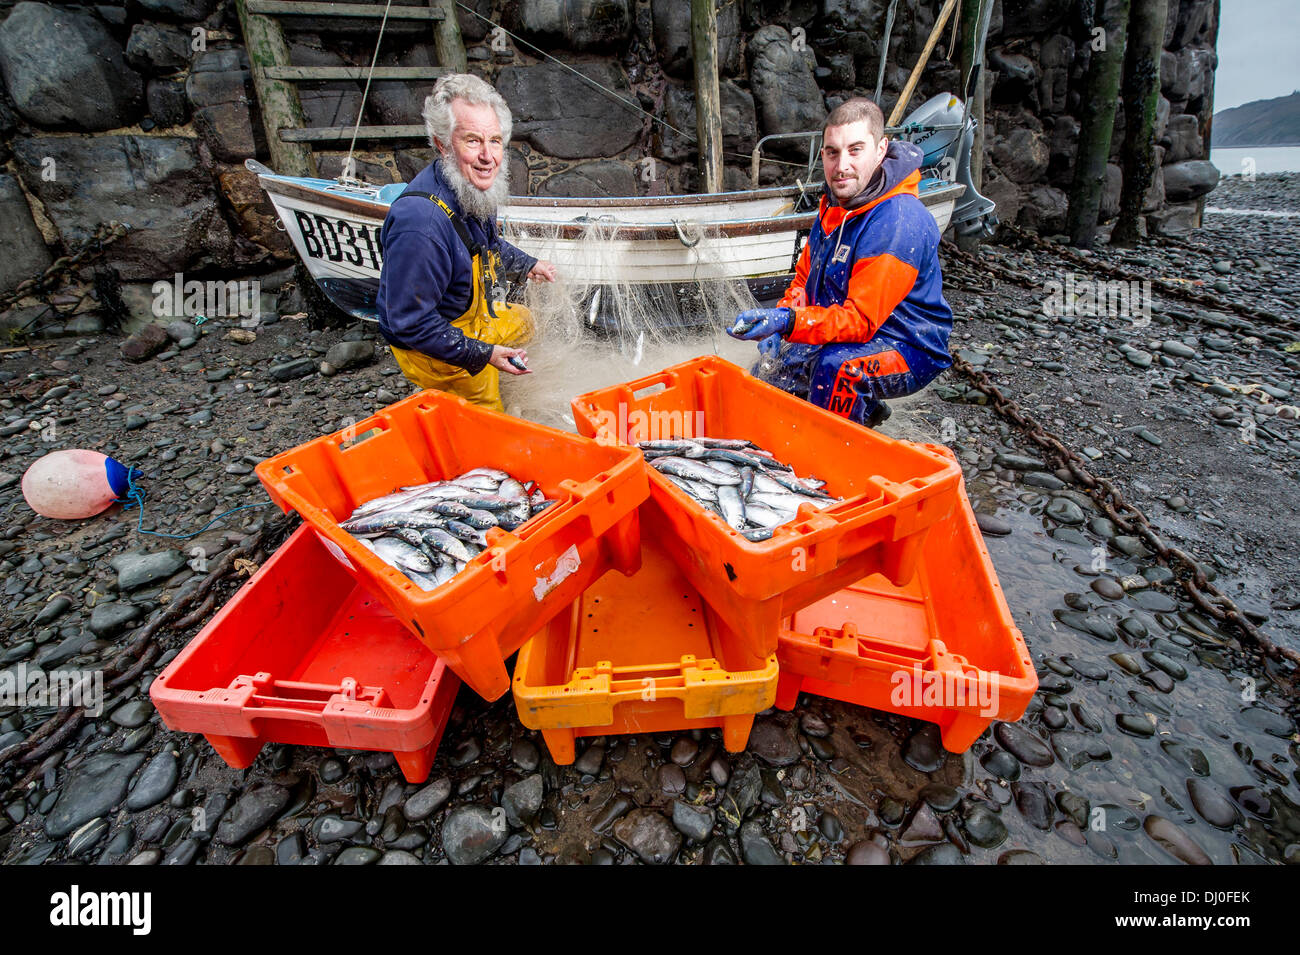 Los pescadores Chris Braund (izquierda) y Jordania Ross sus redes de descarga de pescado en el anual Festival de arenque Clovelly Devon, Reino Unido Foto de stock